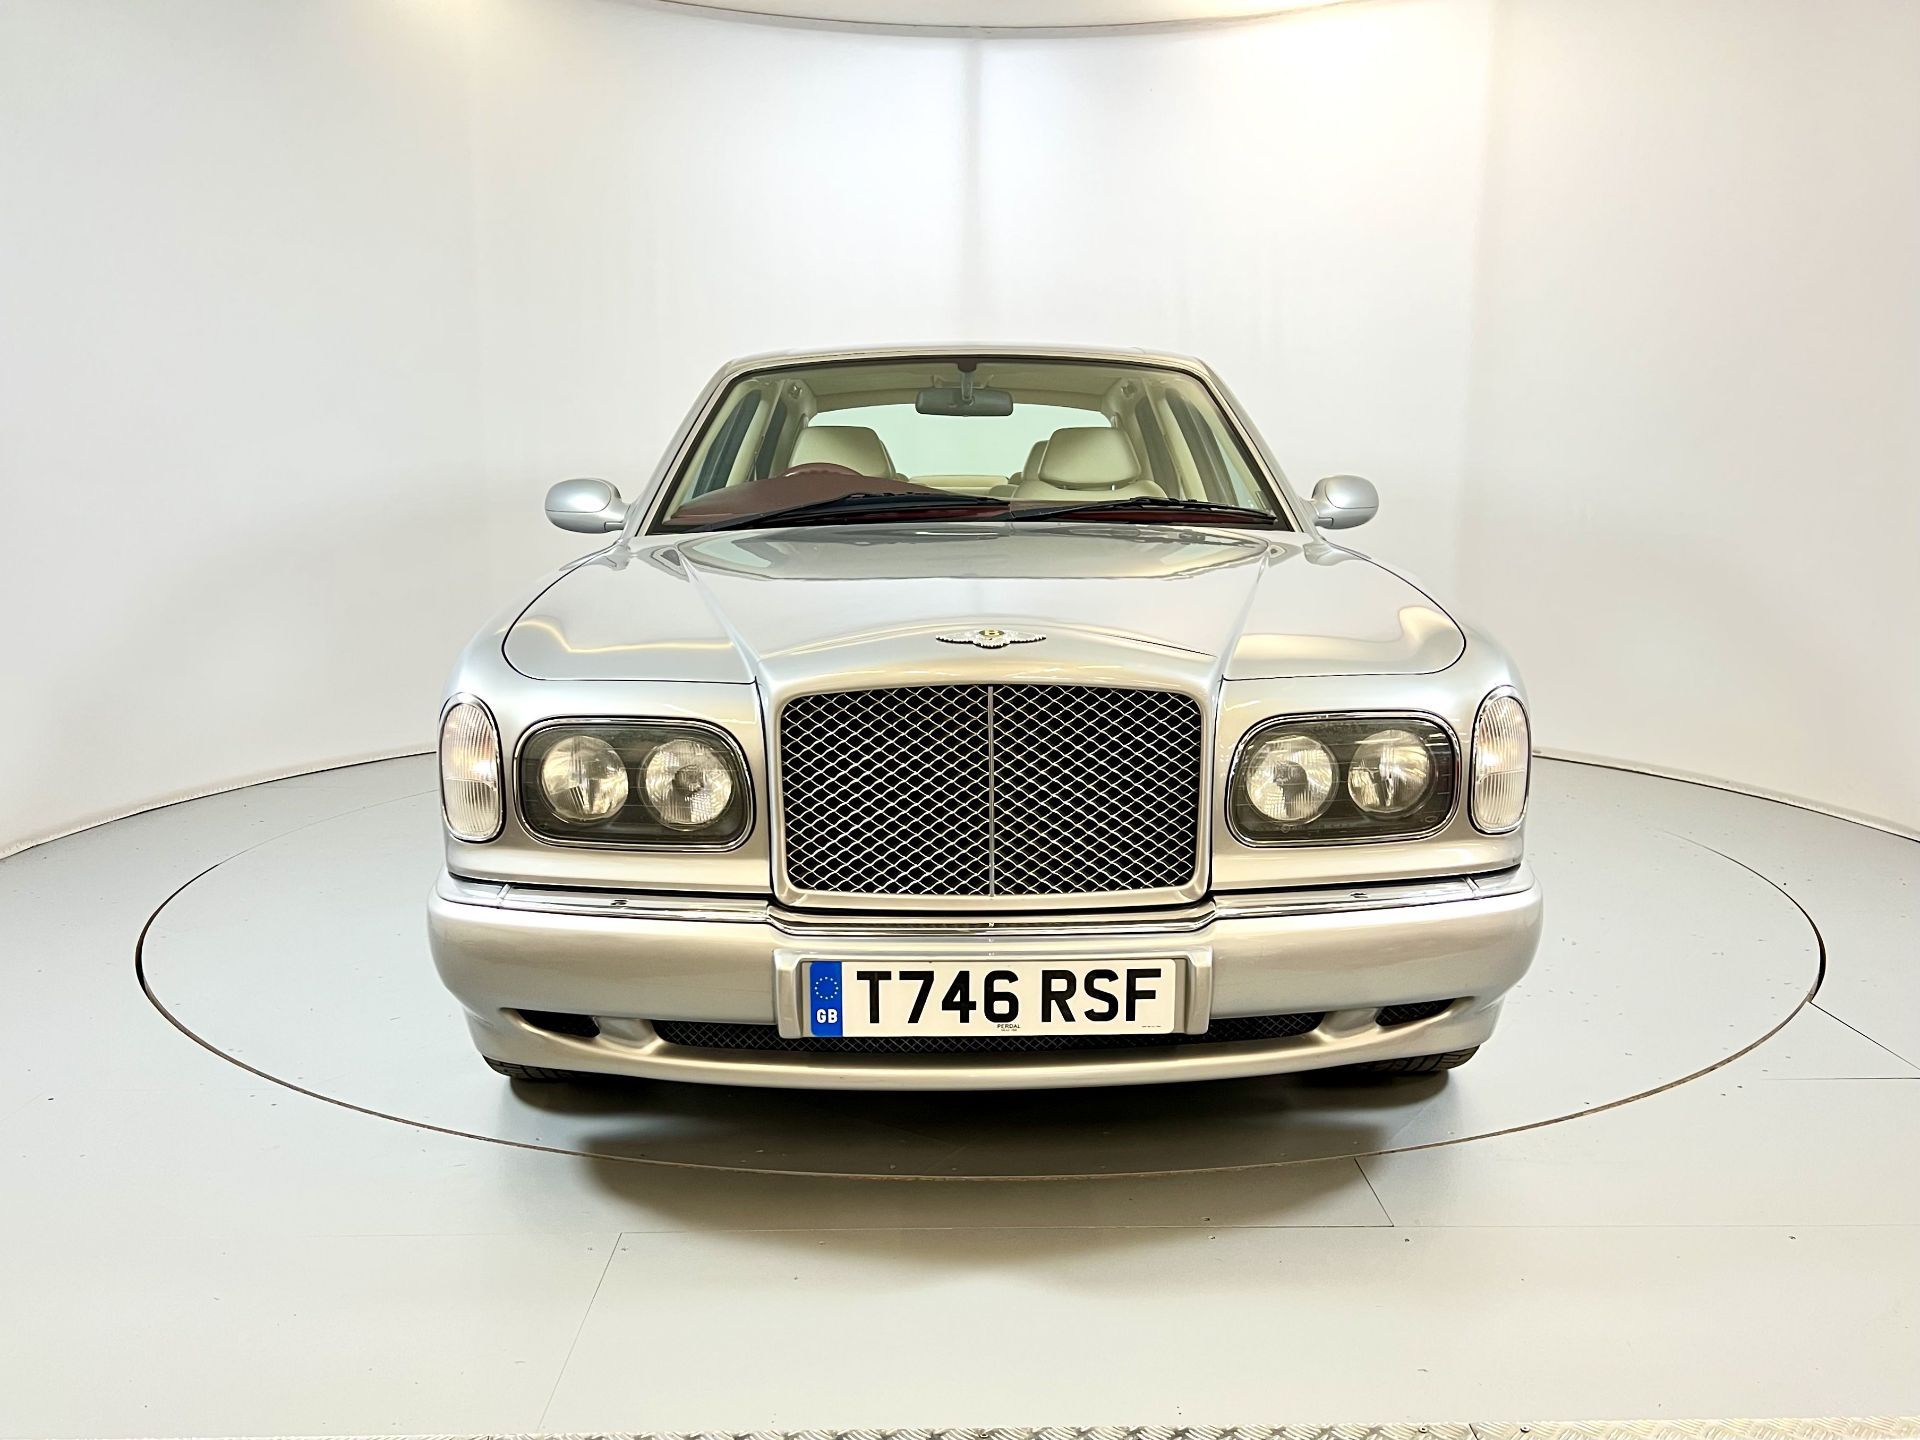 Bentley Arnage - Image 2 of 34